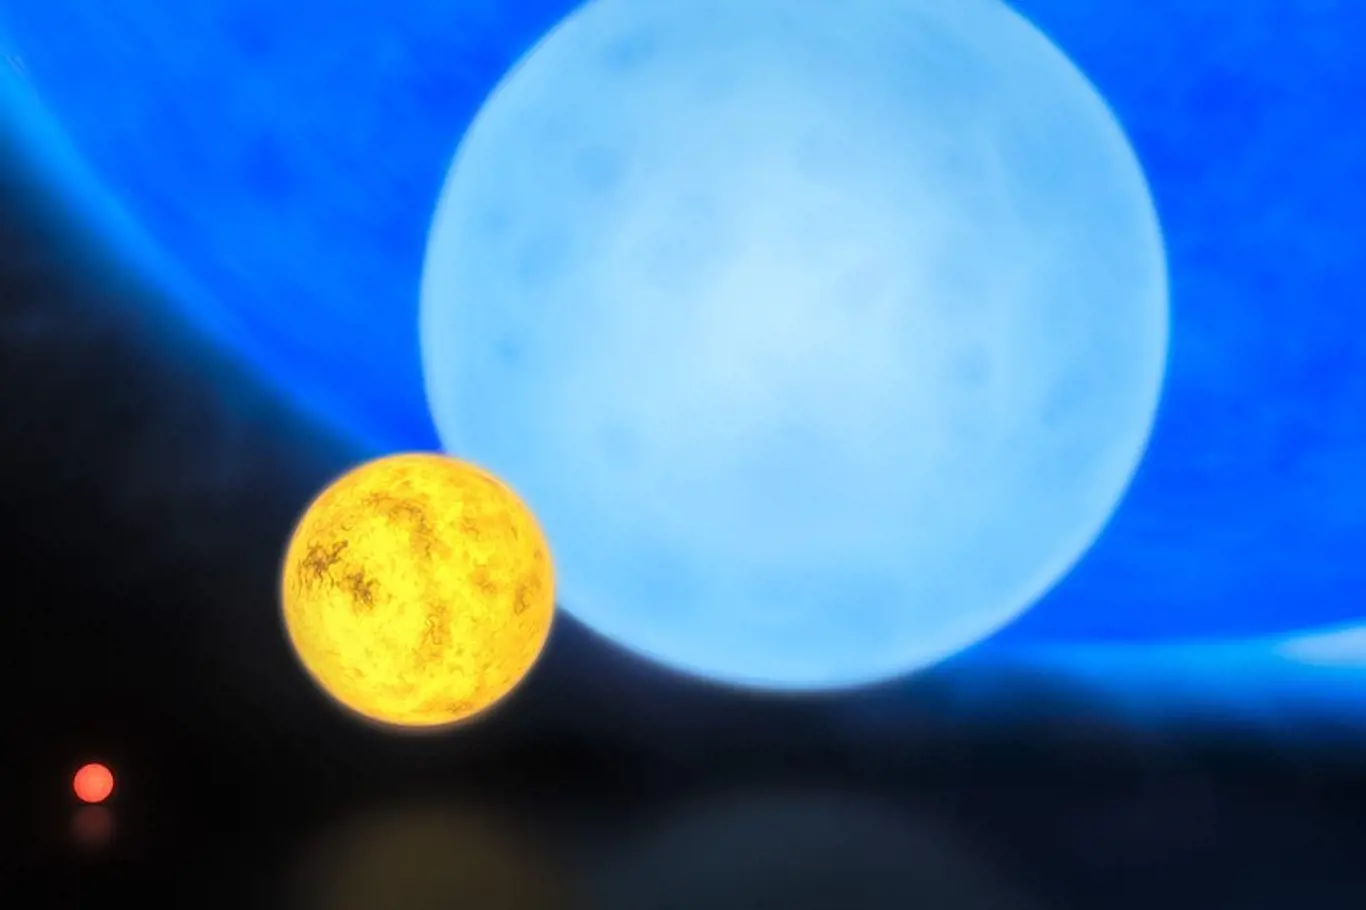 Srovnání velikosti hvězd různého typu: zleva červený trpaslík, naše Slunce, obyčejný modrý obr a R136a1